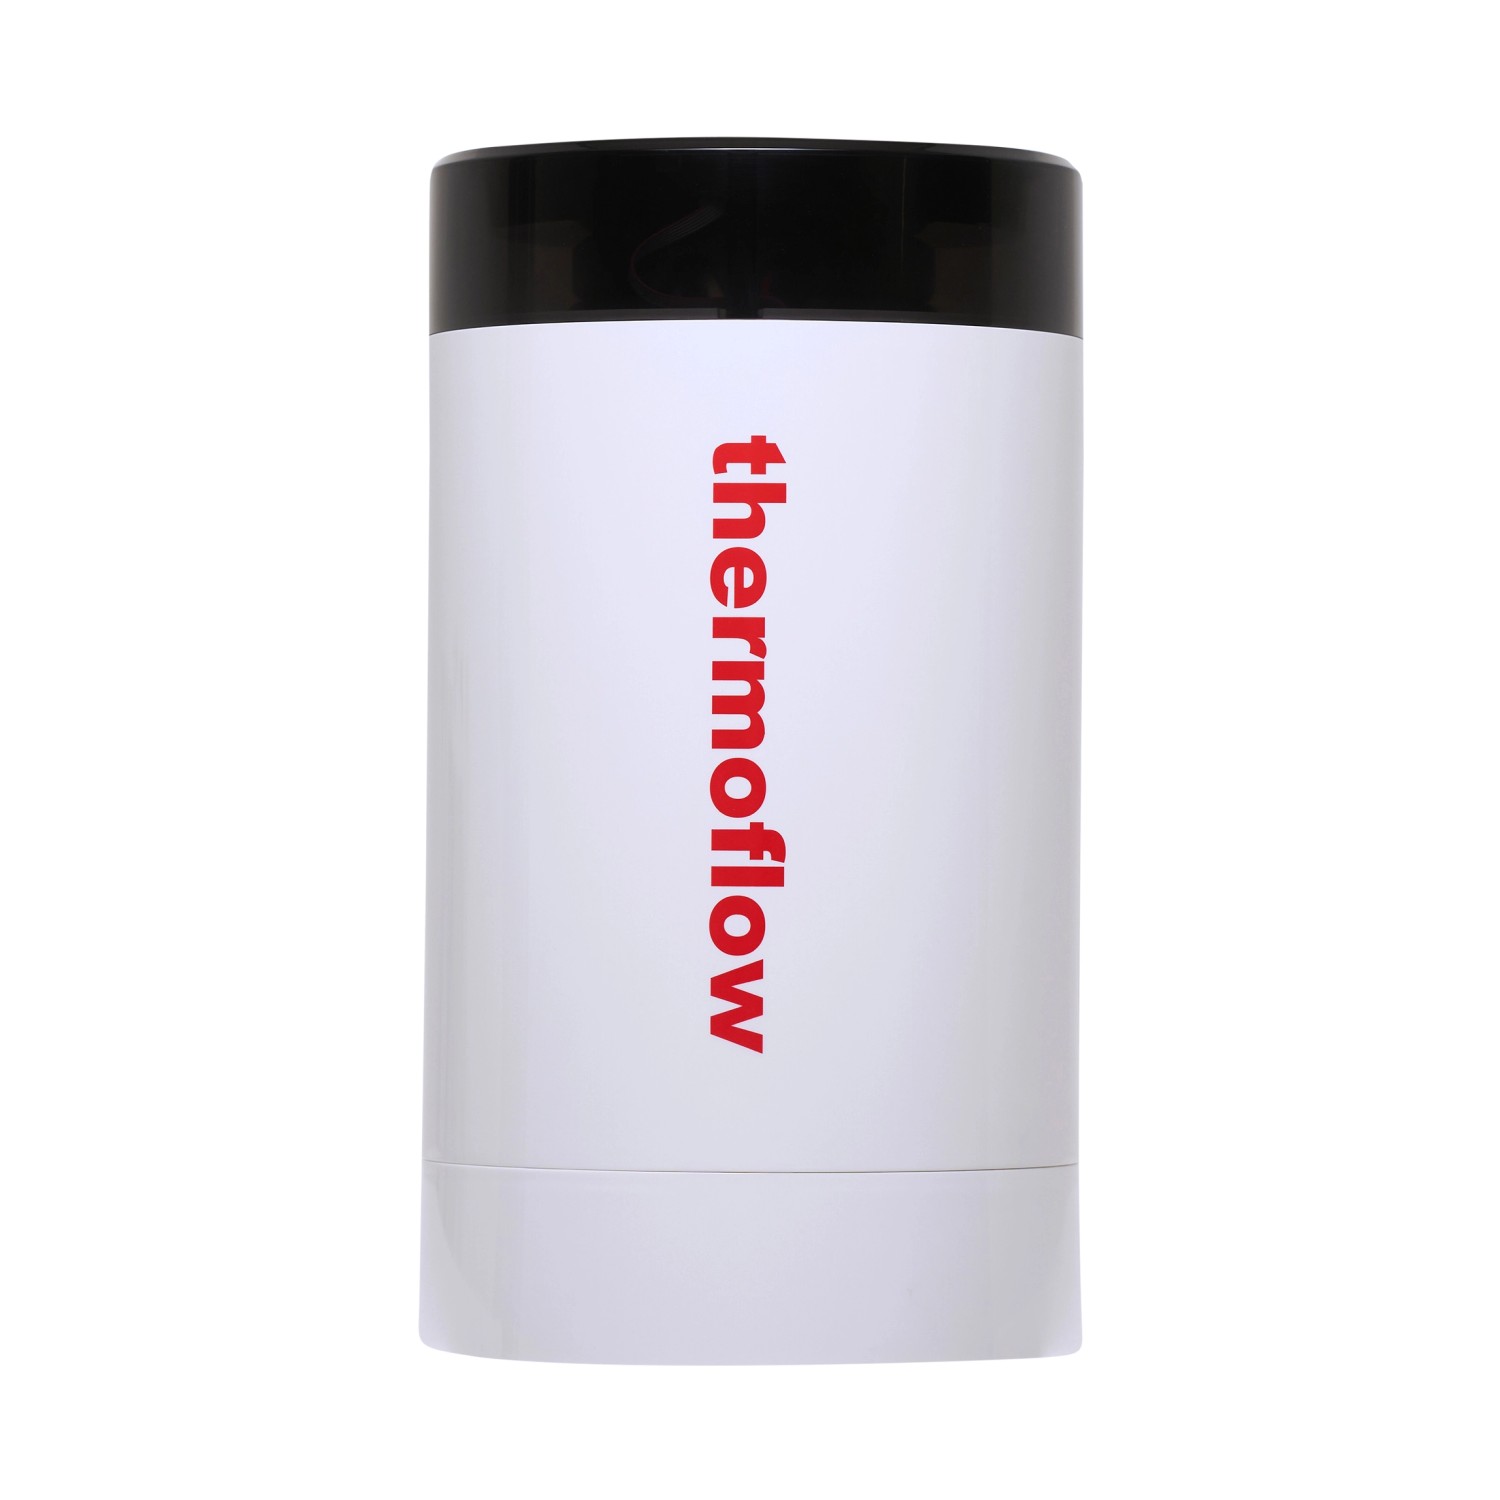 Thermoflow Kochendwasser-Armatur THERMOFLOW100R mit rundem Auslauf